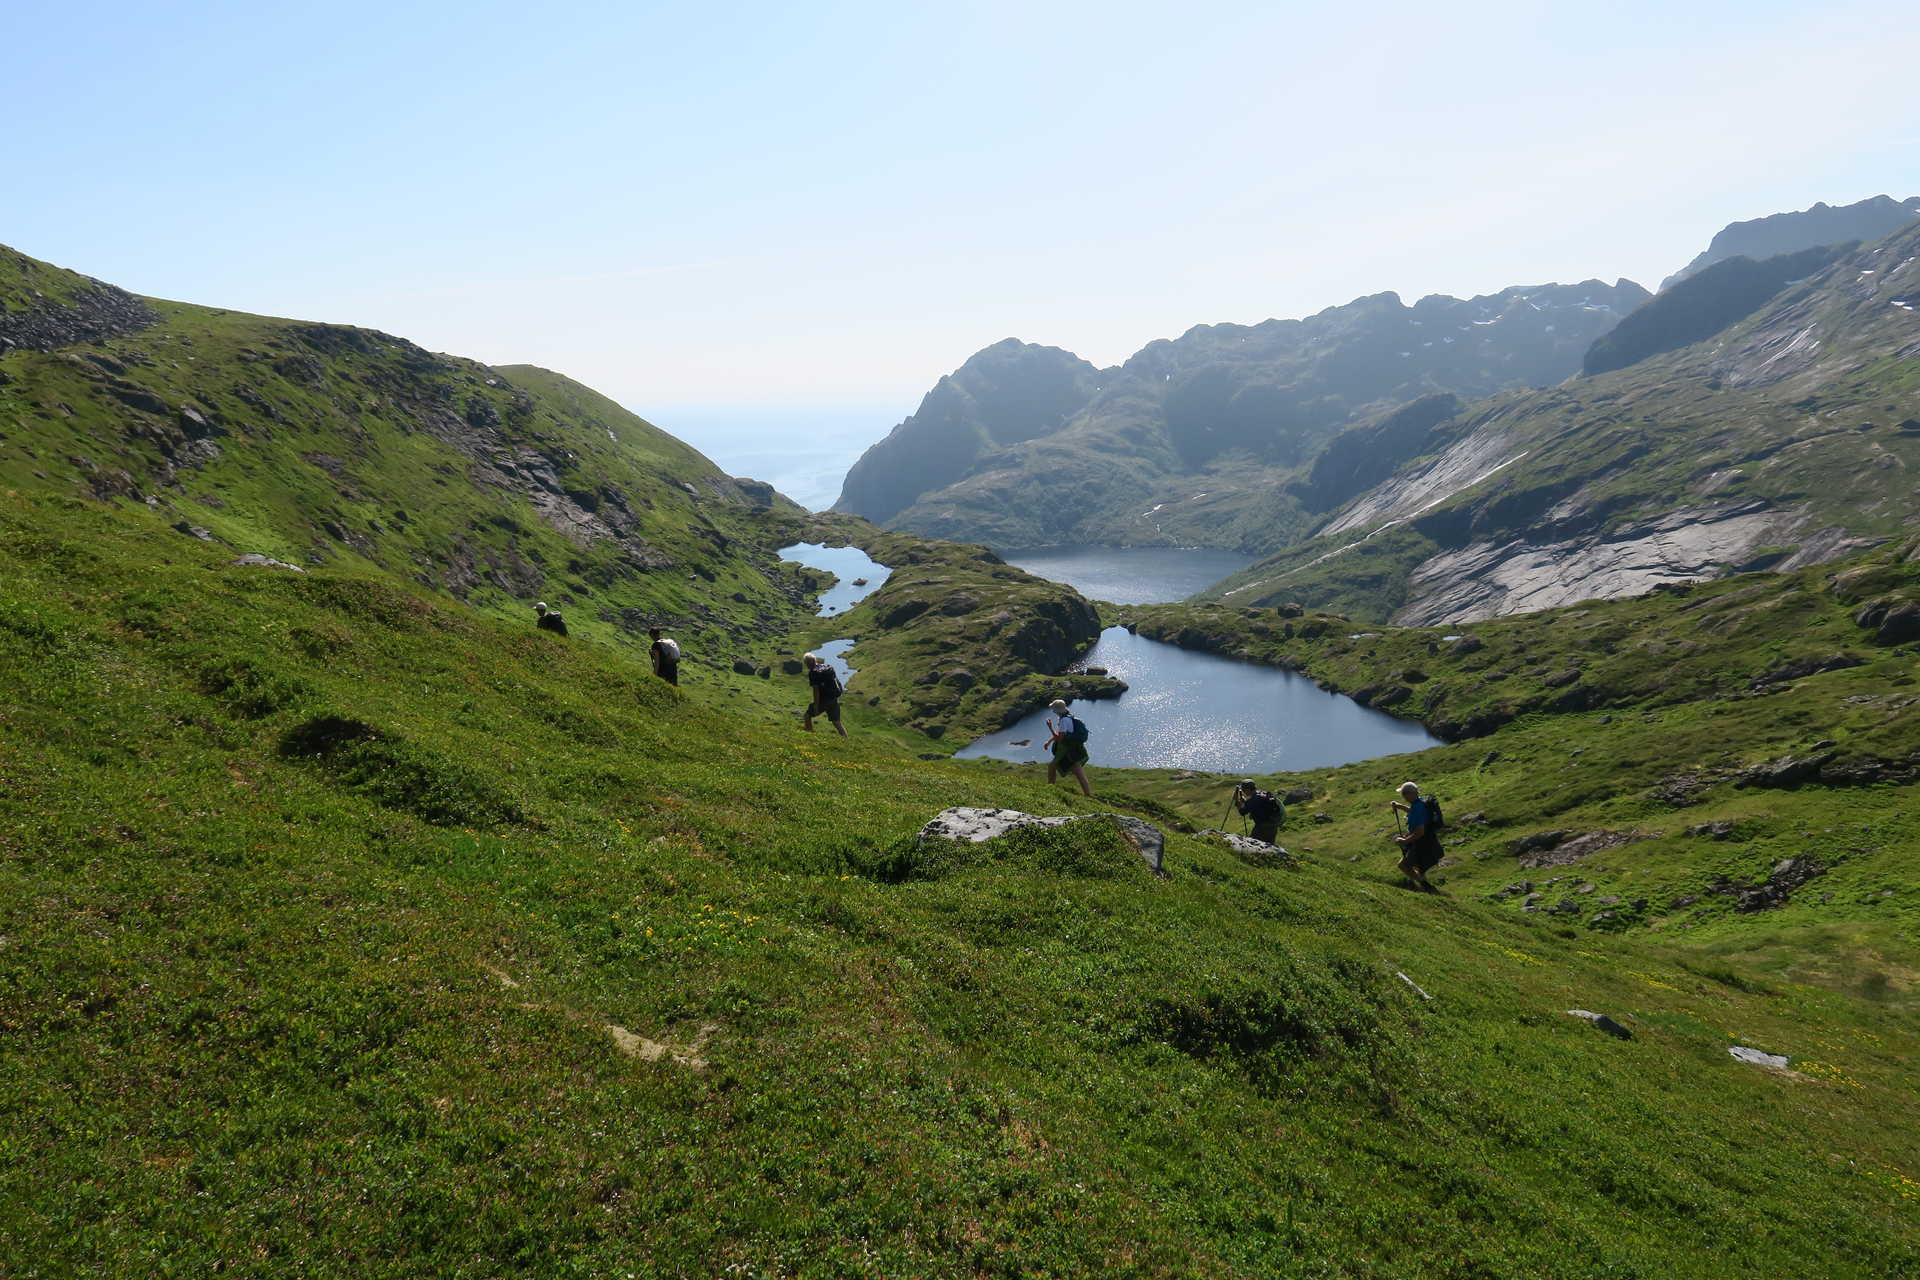 Hiking in the Lofoten Islands